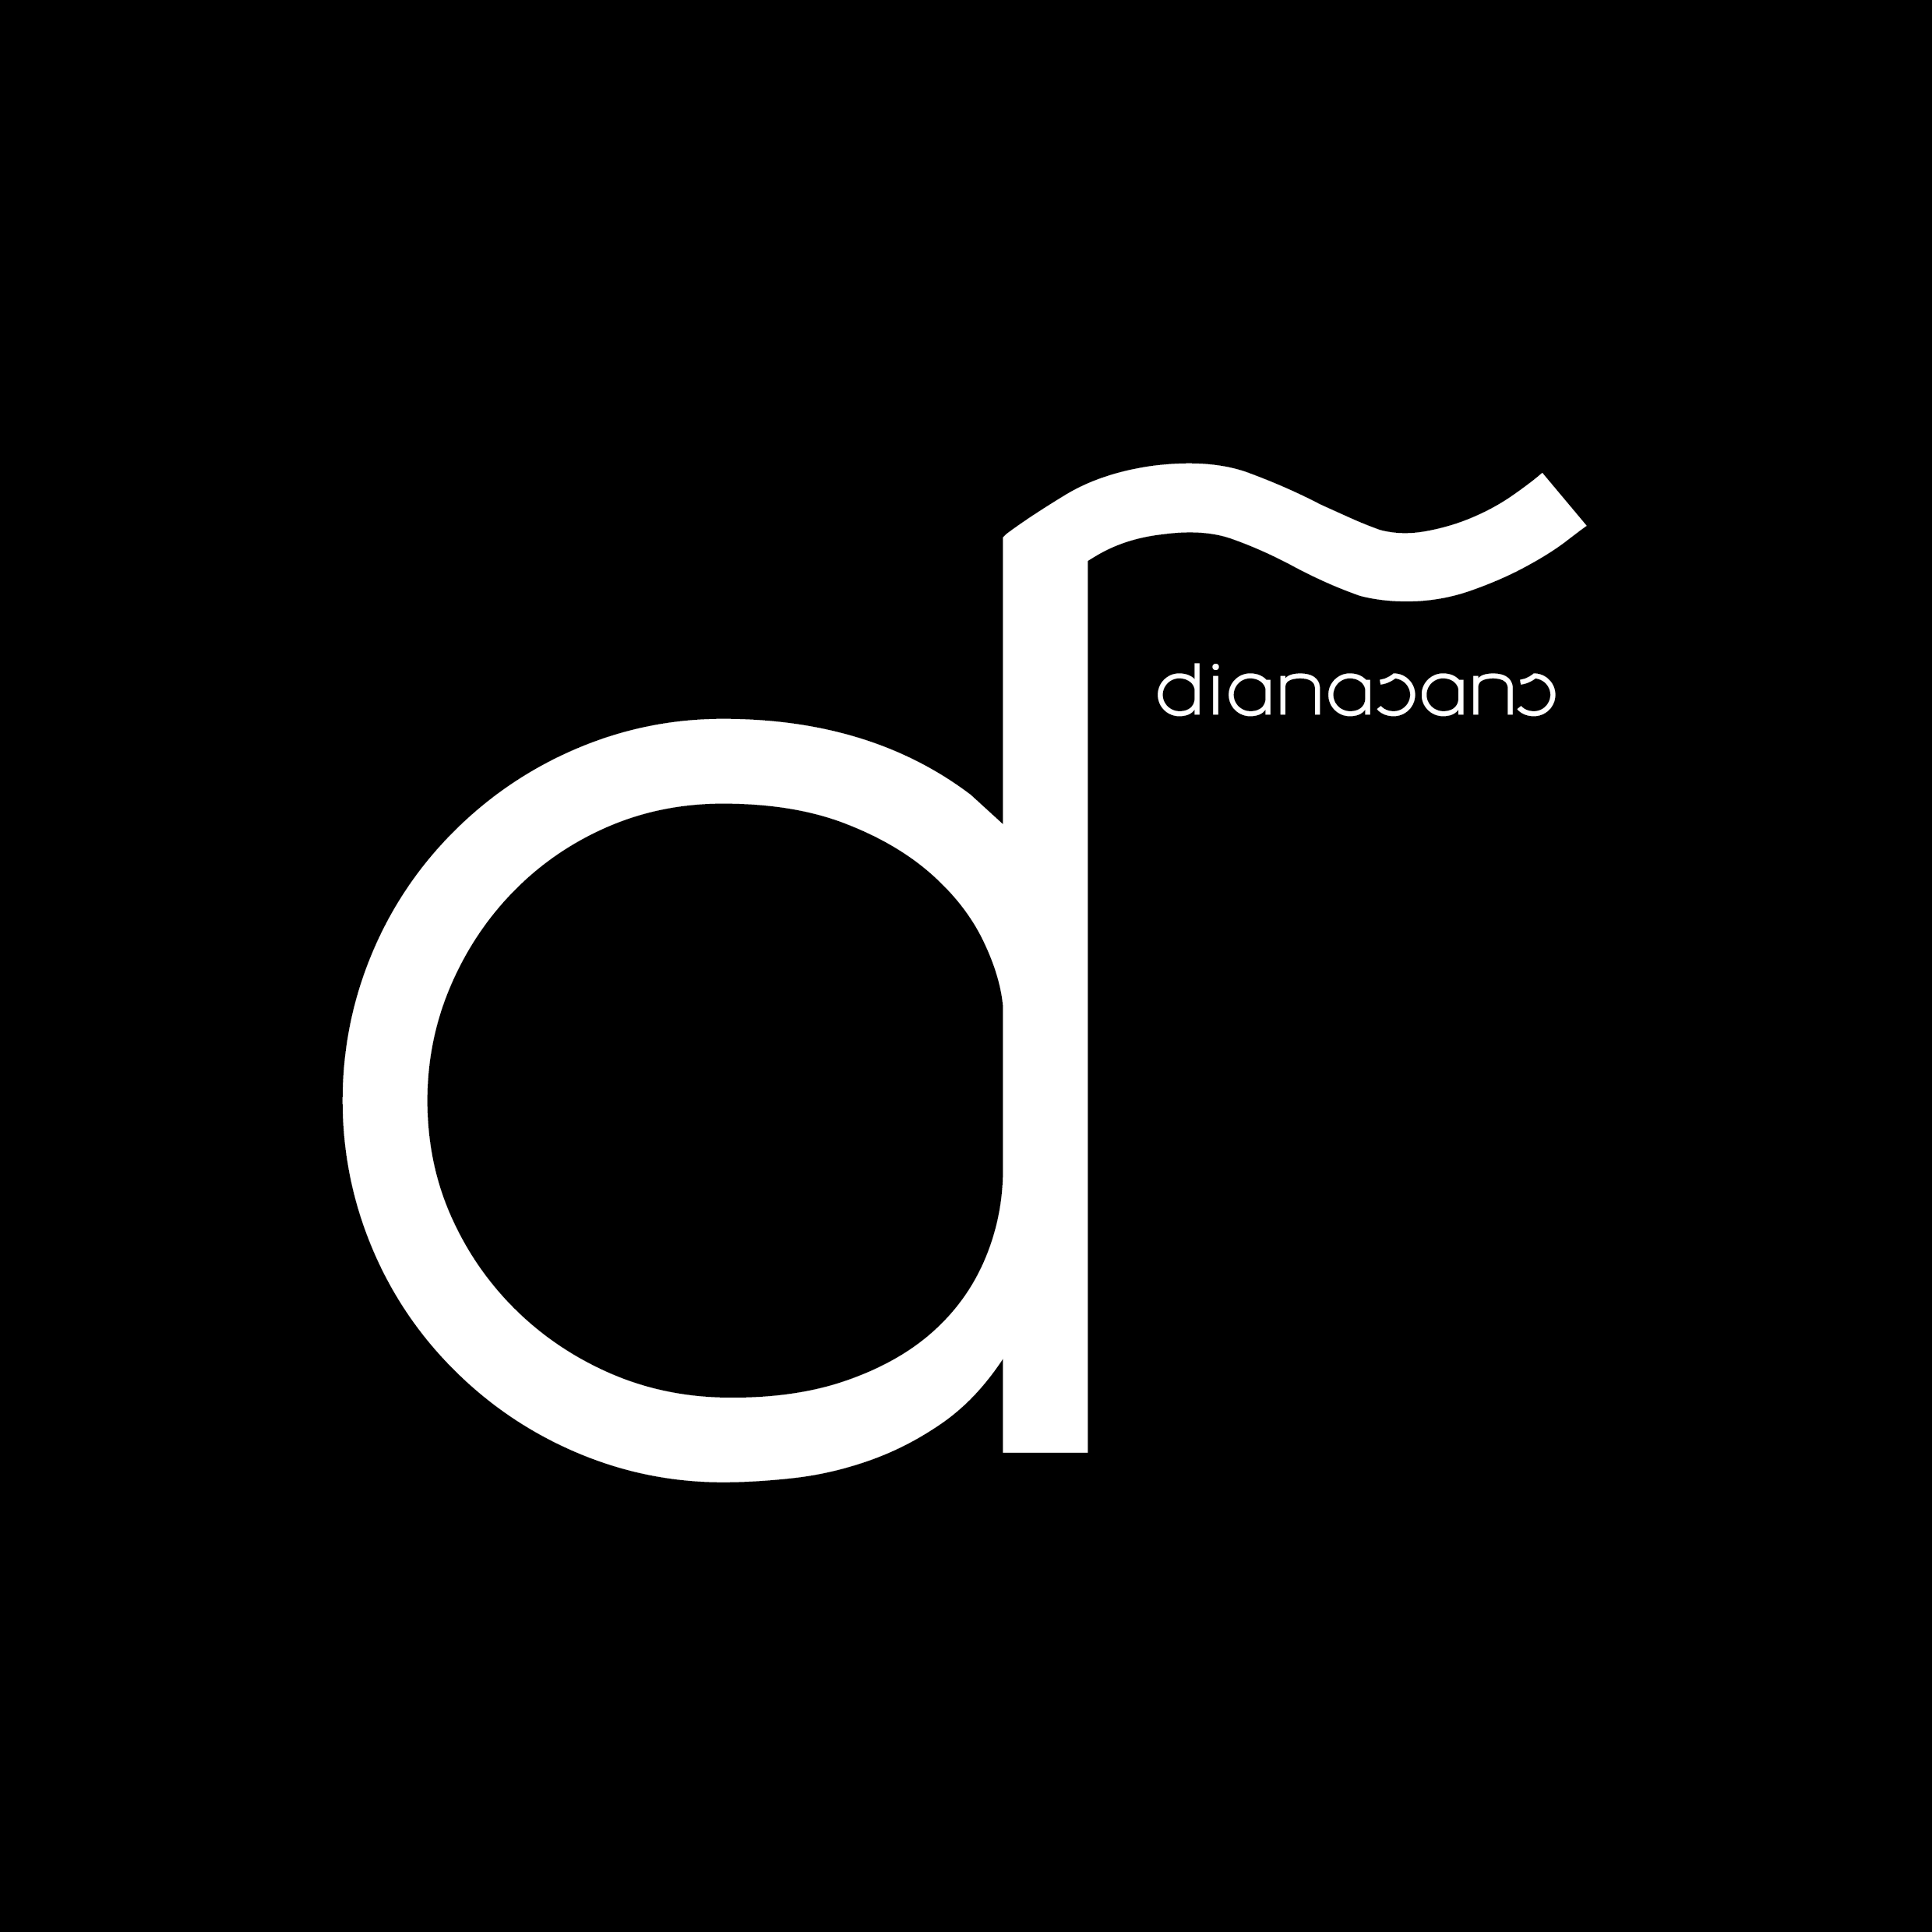 Diana Sans